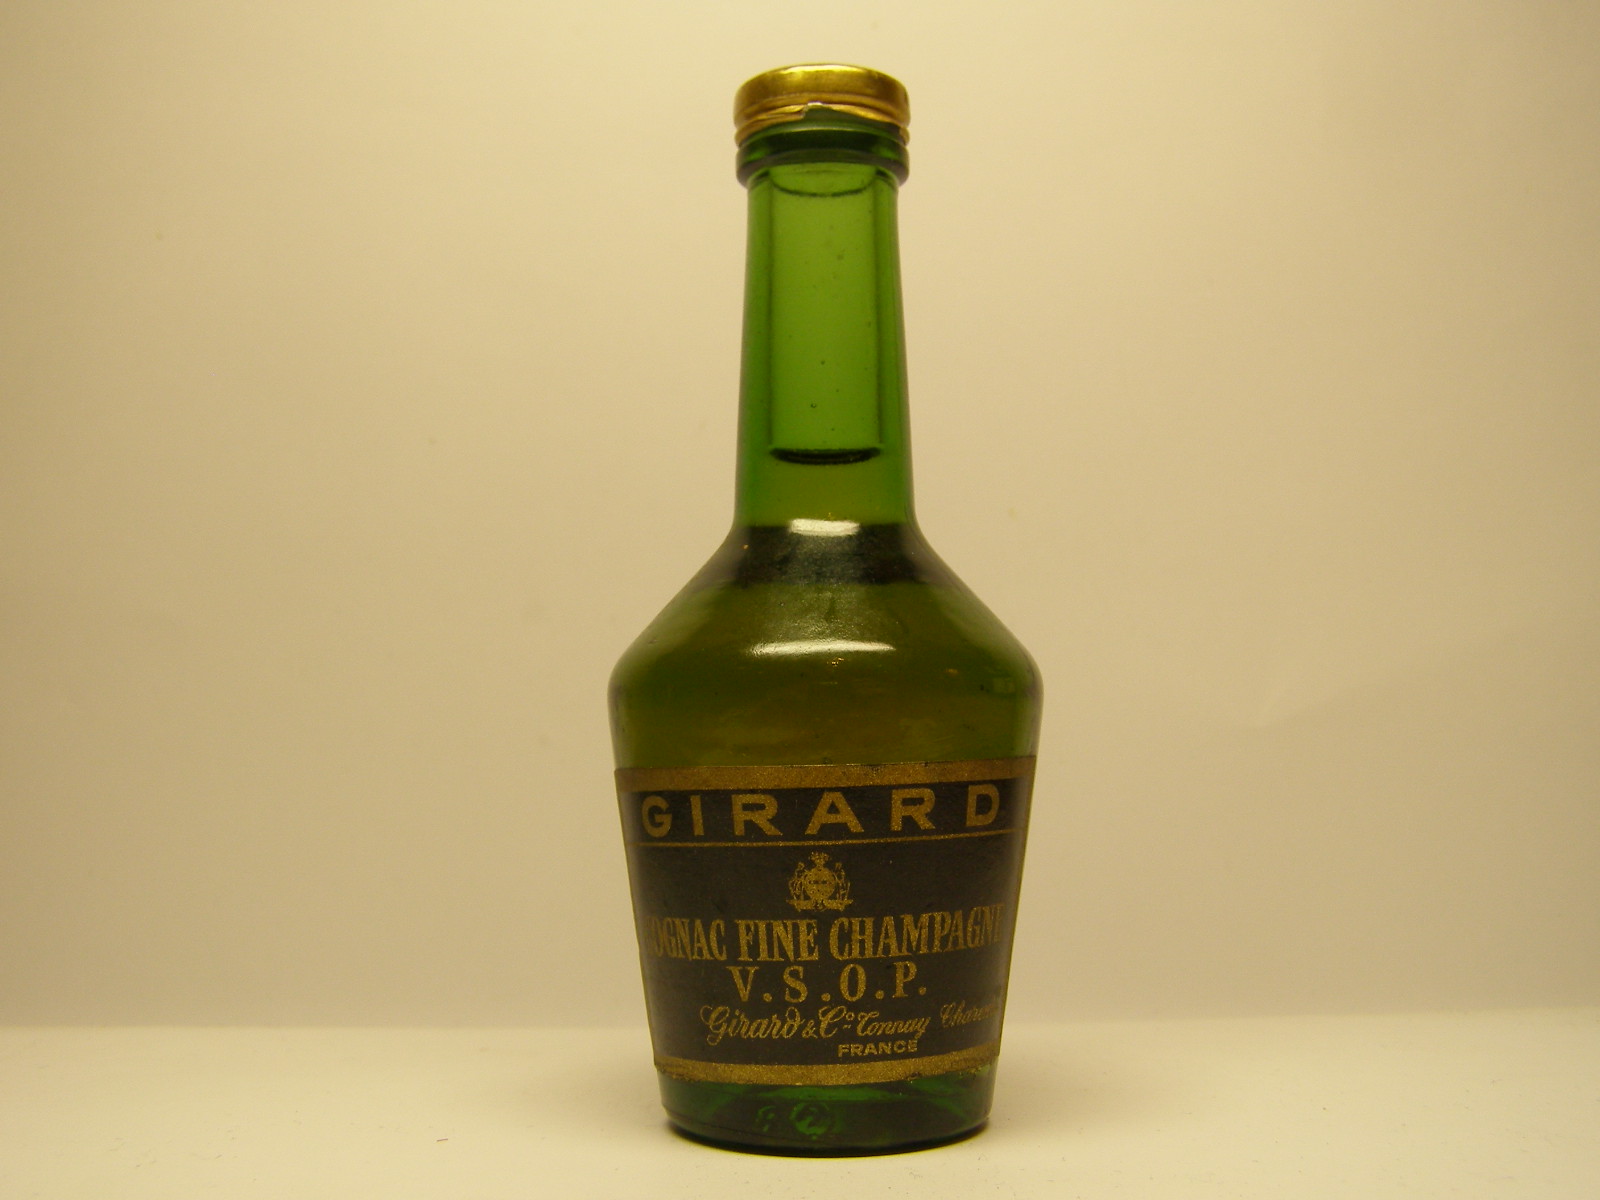 GIRARD V.S.O.P. Fine Champagne Cognac